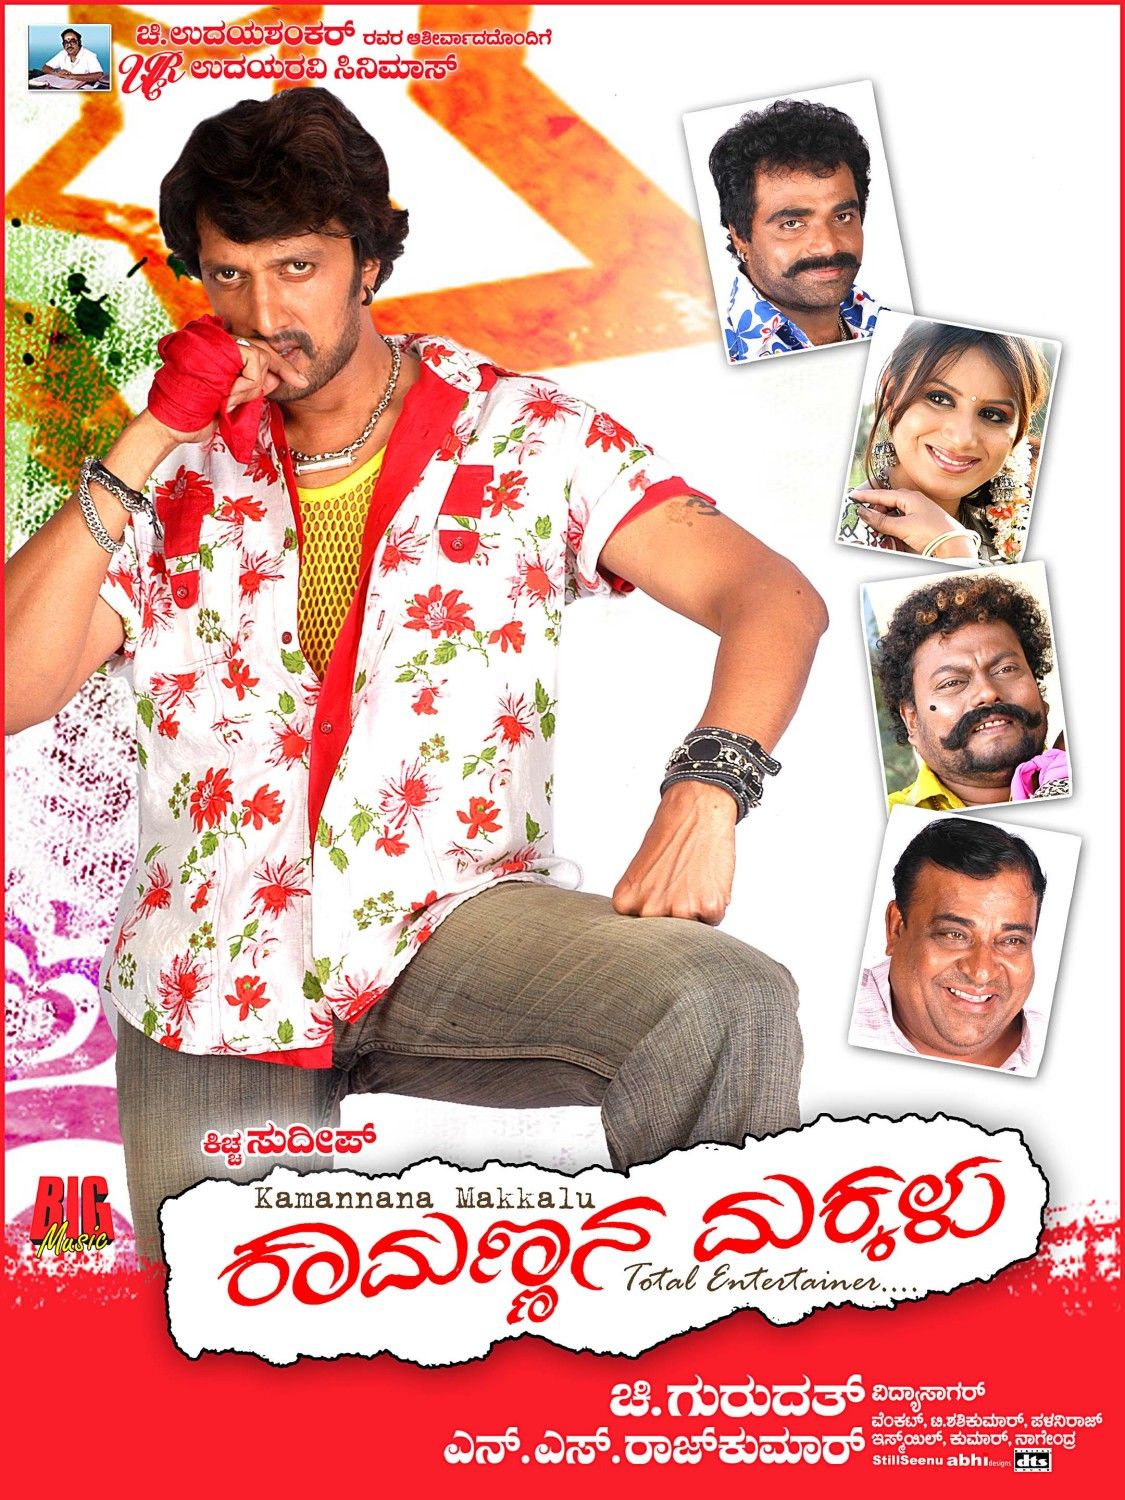 Extra Large Movie Poster Image for Kamannana Makkalu (#4 of 17)